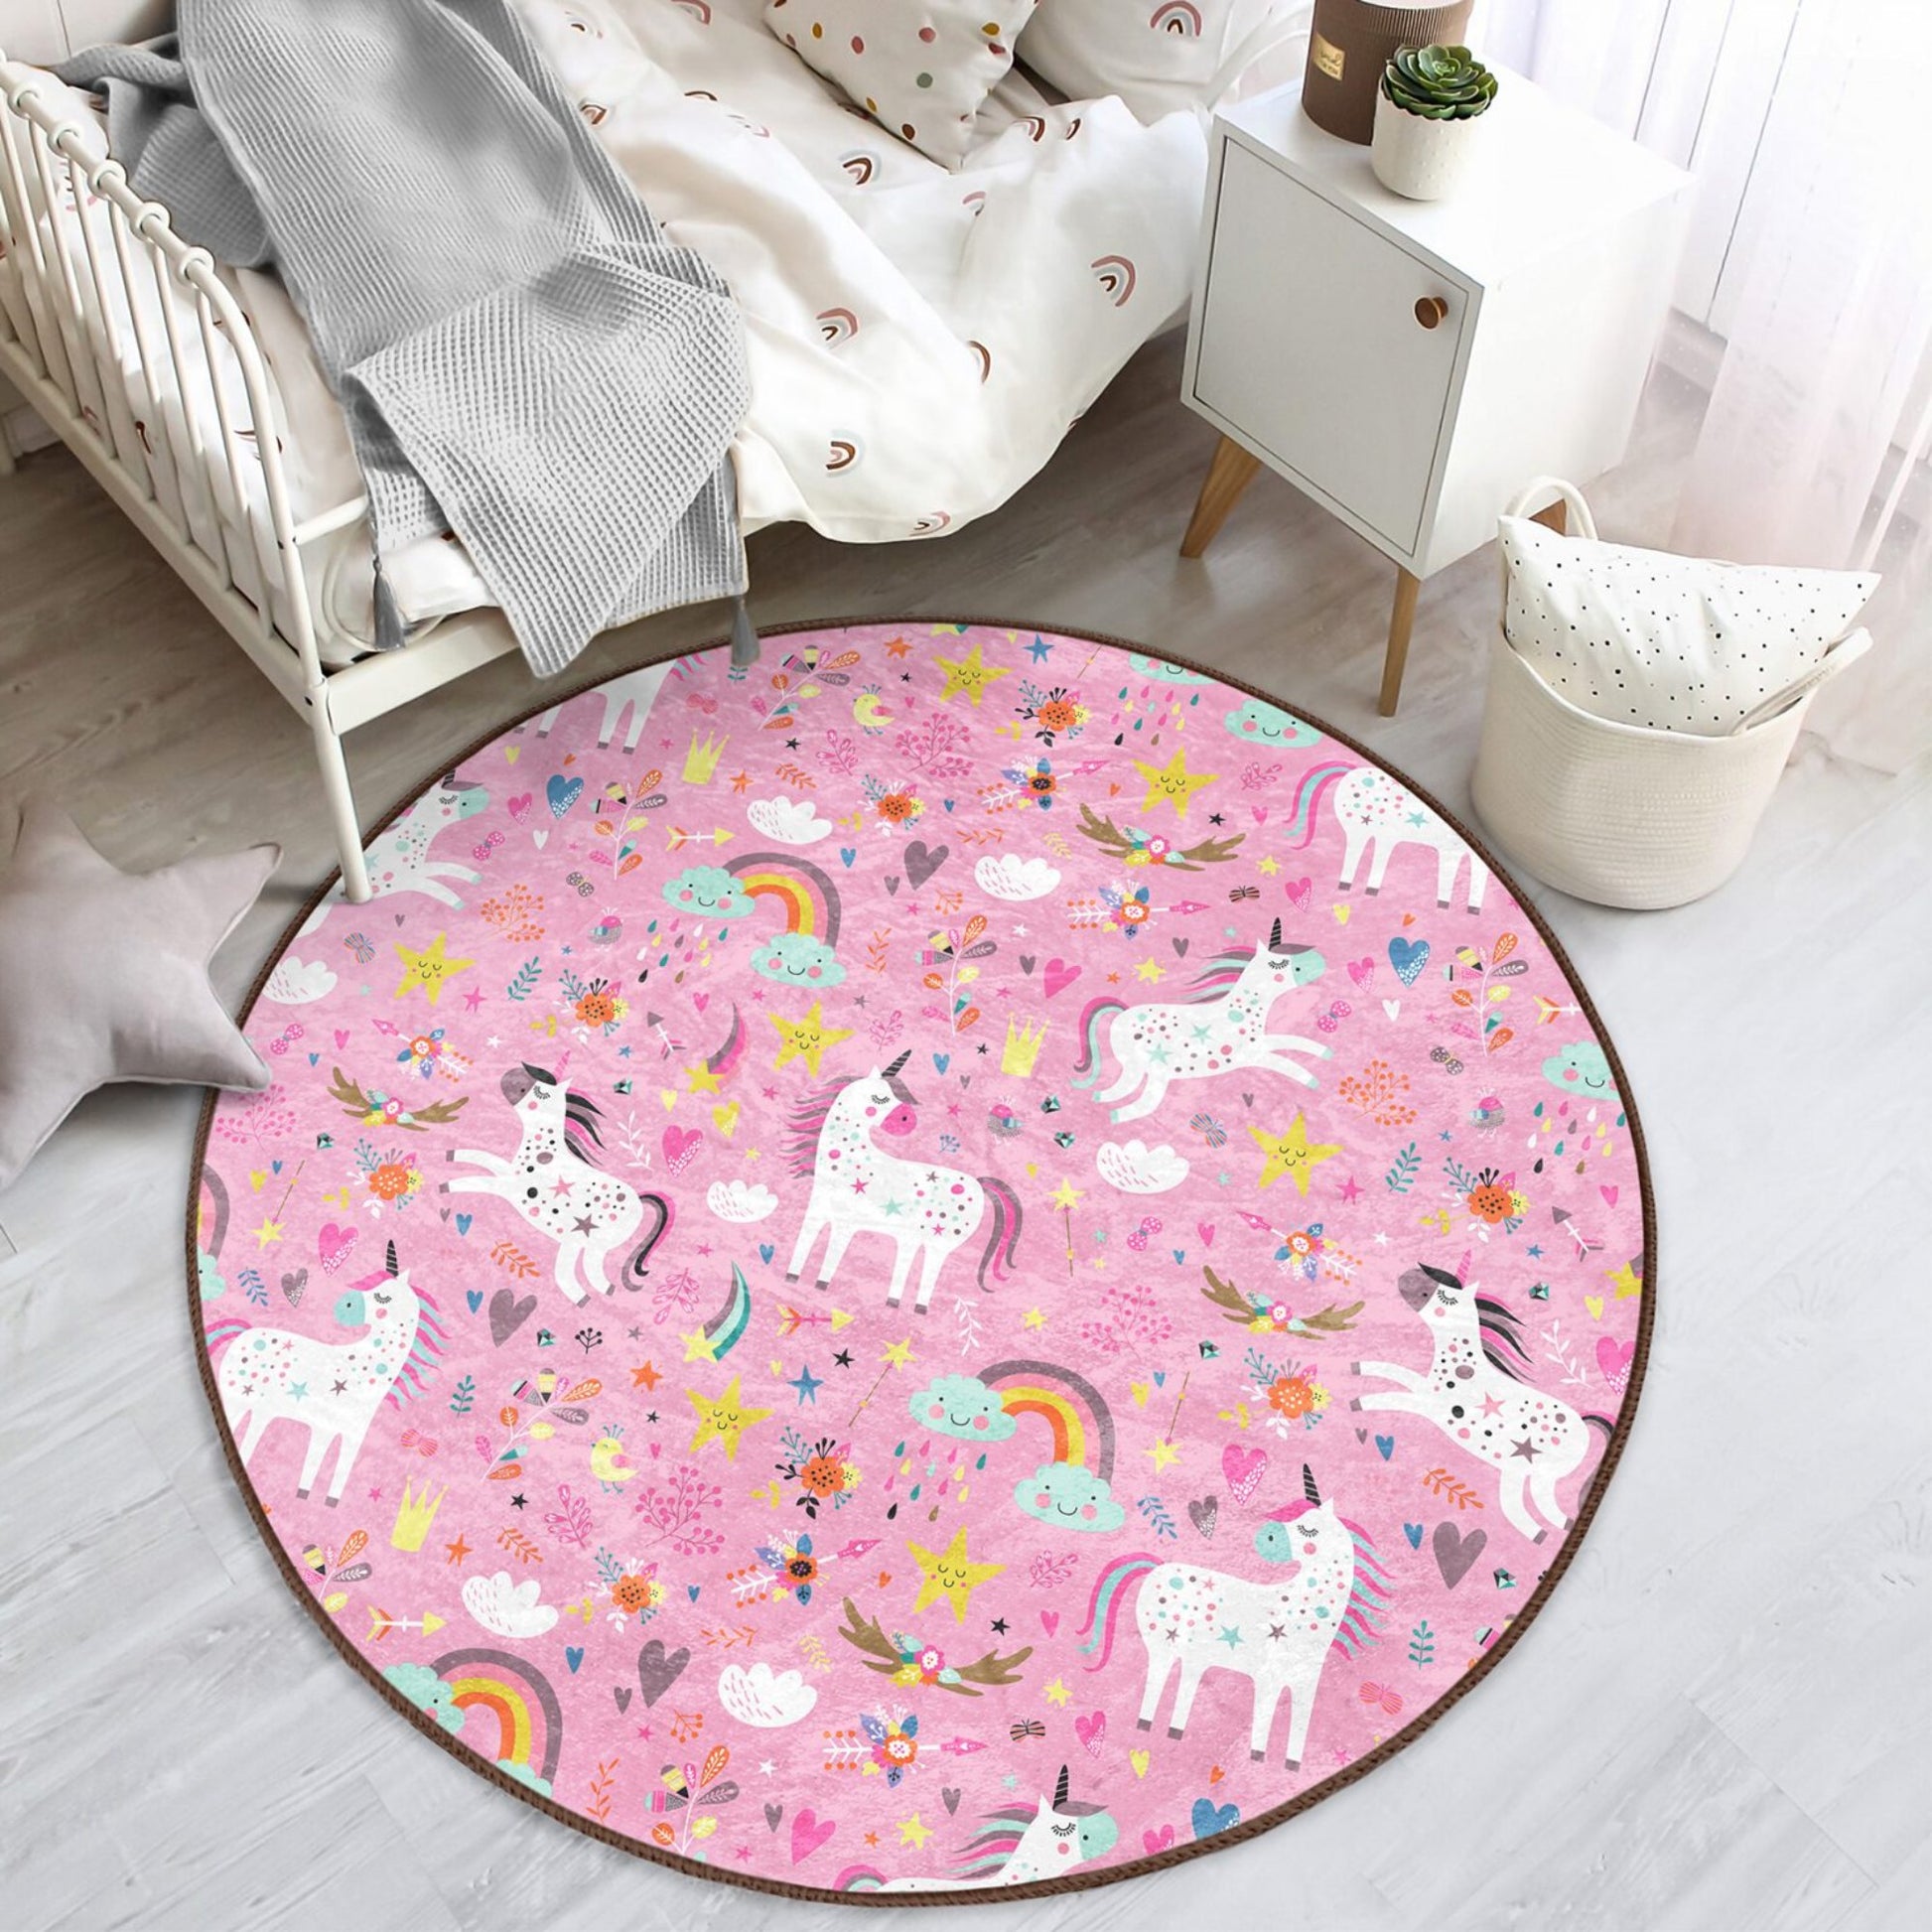 Round Unicorn Patterned Floor Rug - Enchanting Charm